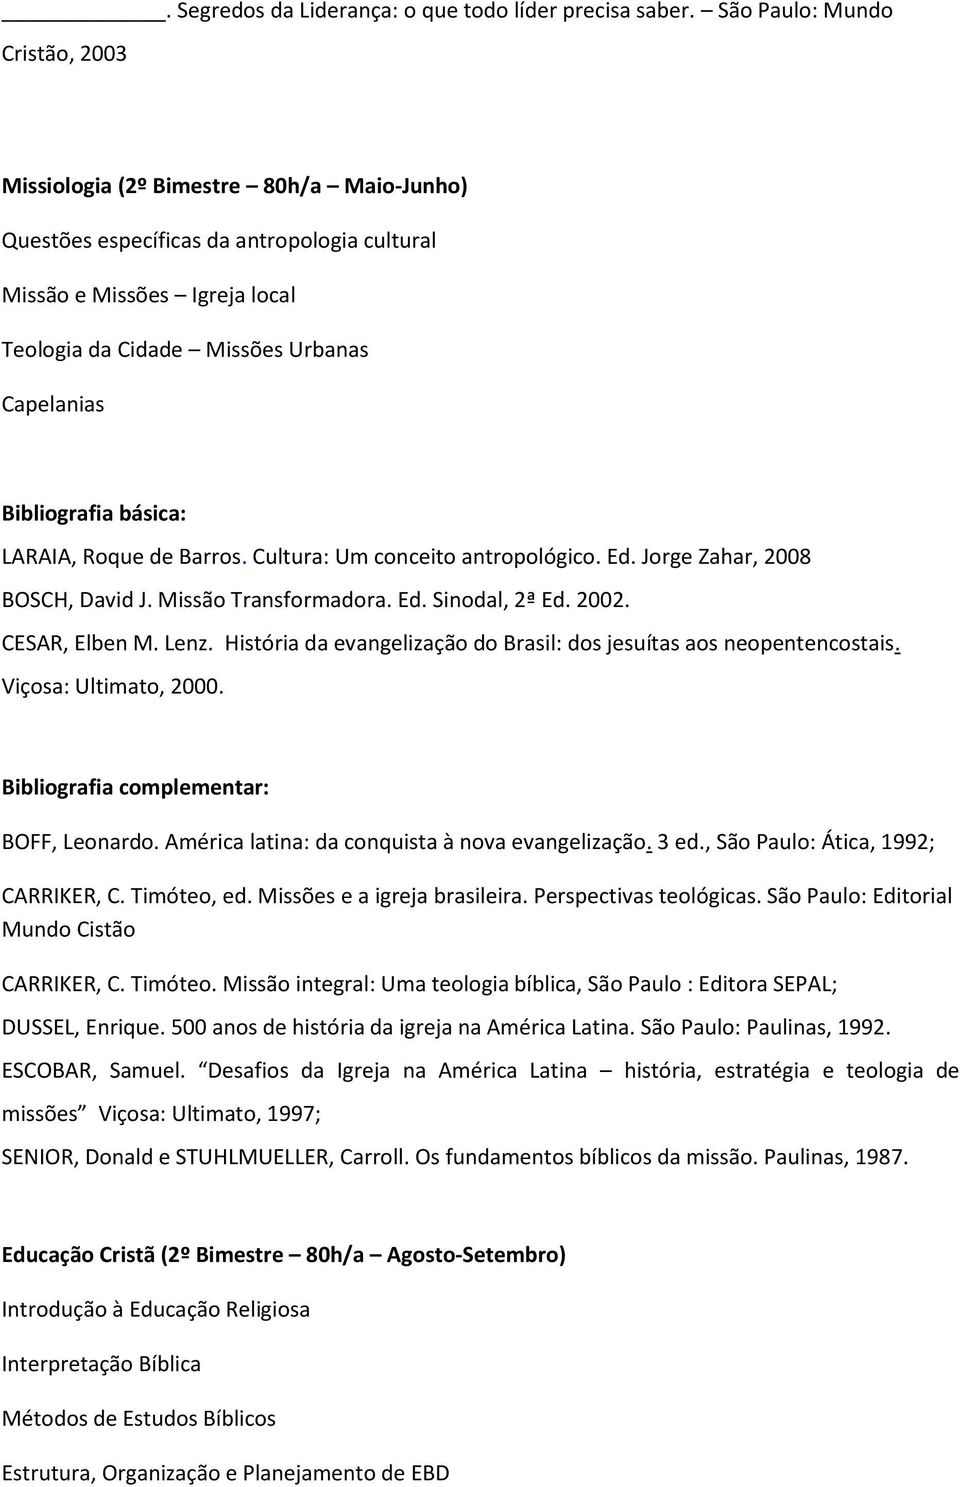 LARAIA, Roque de Barros. Cultura: Um conceito antropológico. Ed. Jorge Zahar, 2008 BOSCH, David J. Missão Transformadora. Ed. Sinodal, 2ª Ed. 2002. CESAR, Elben M. Lenz.